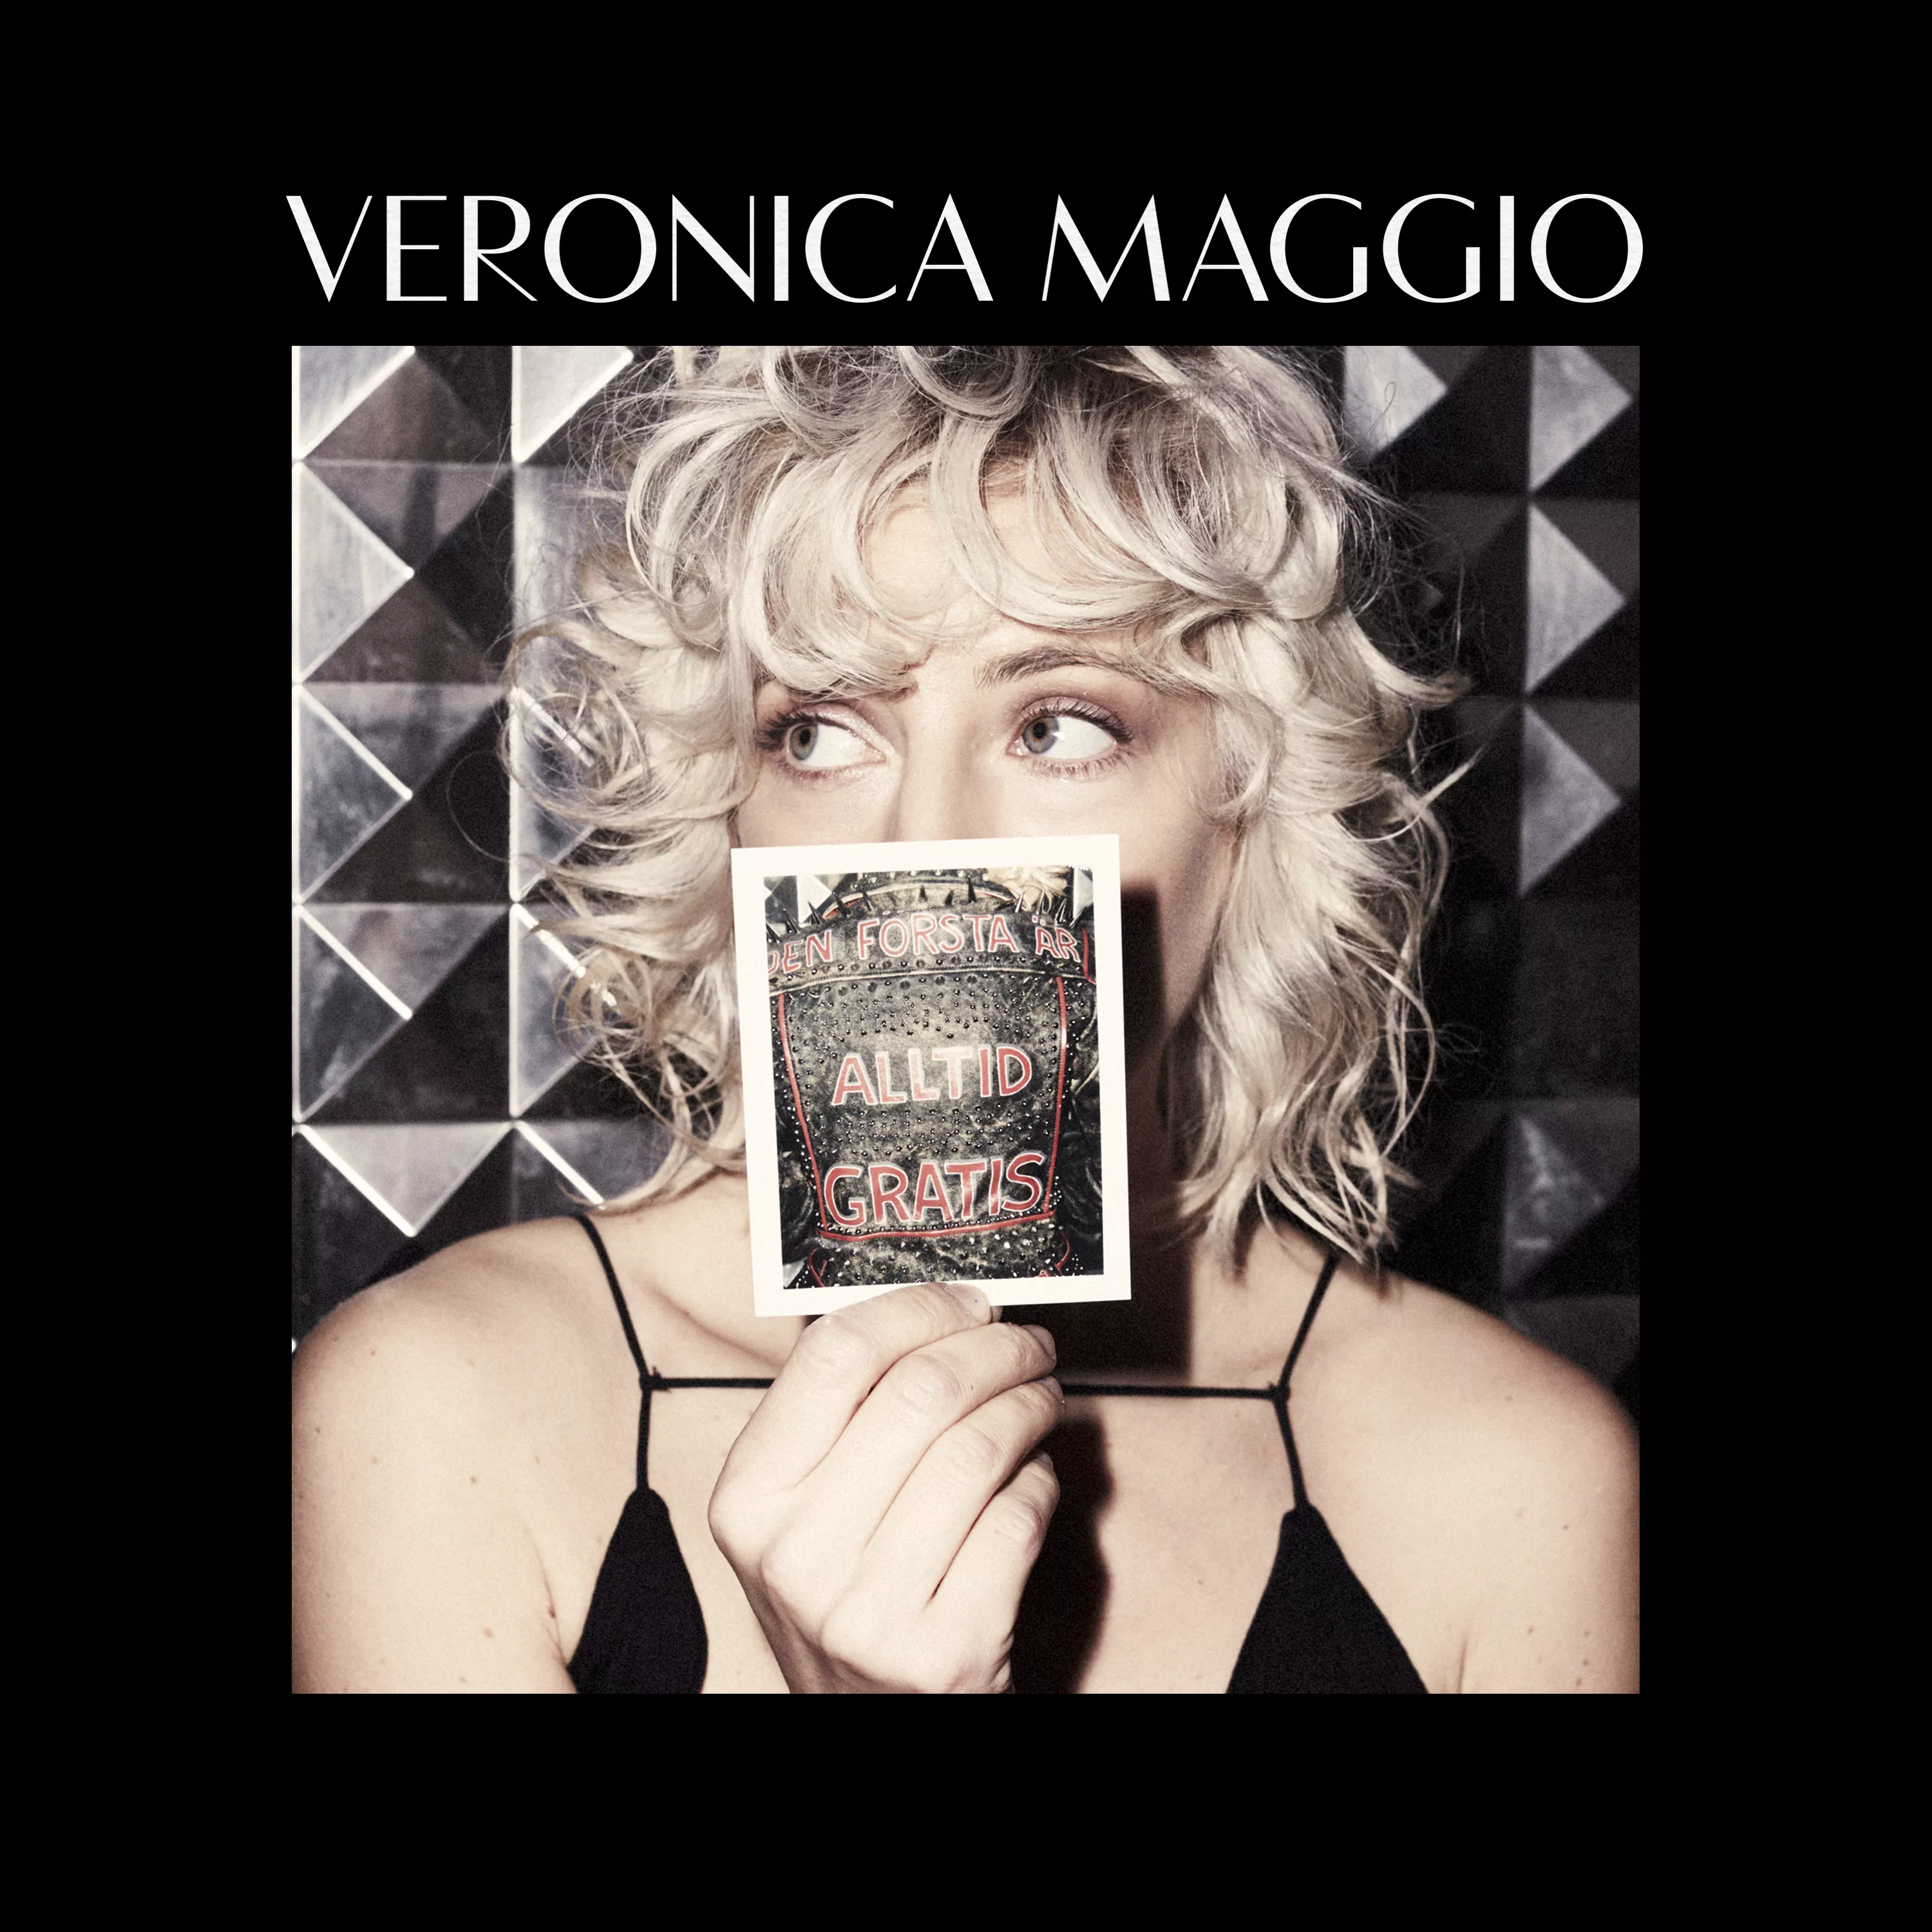 Den första är alltid gratis  - Veronica Maggio